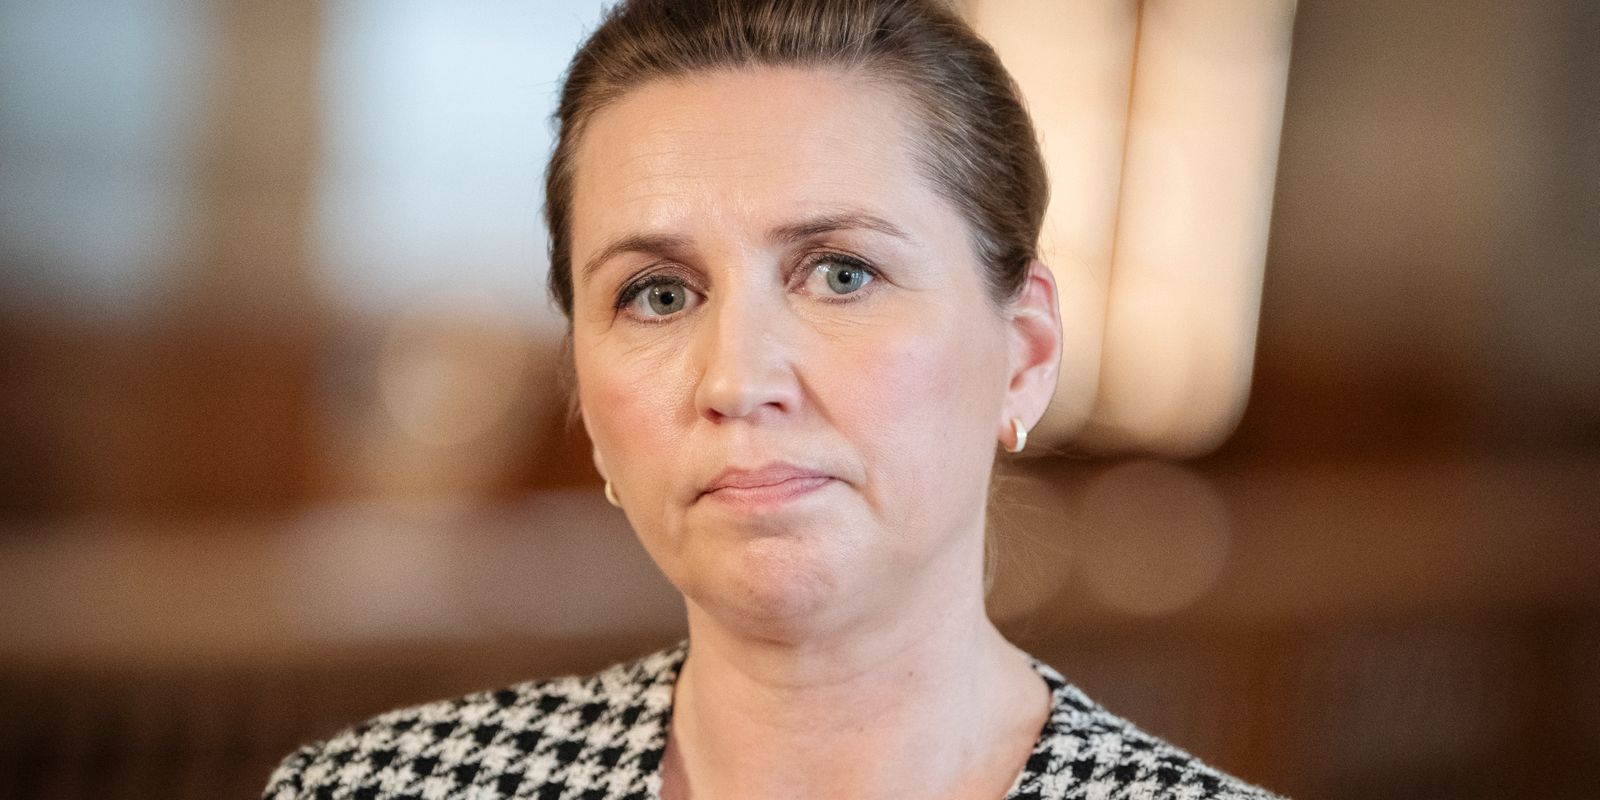 danska regeringspartier skakas av katastrofsiffror